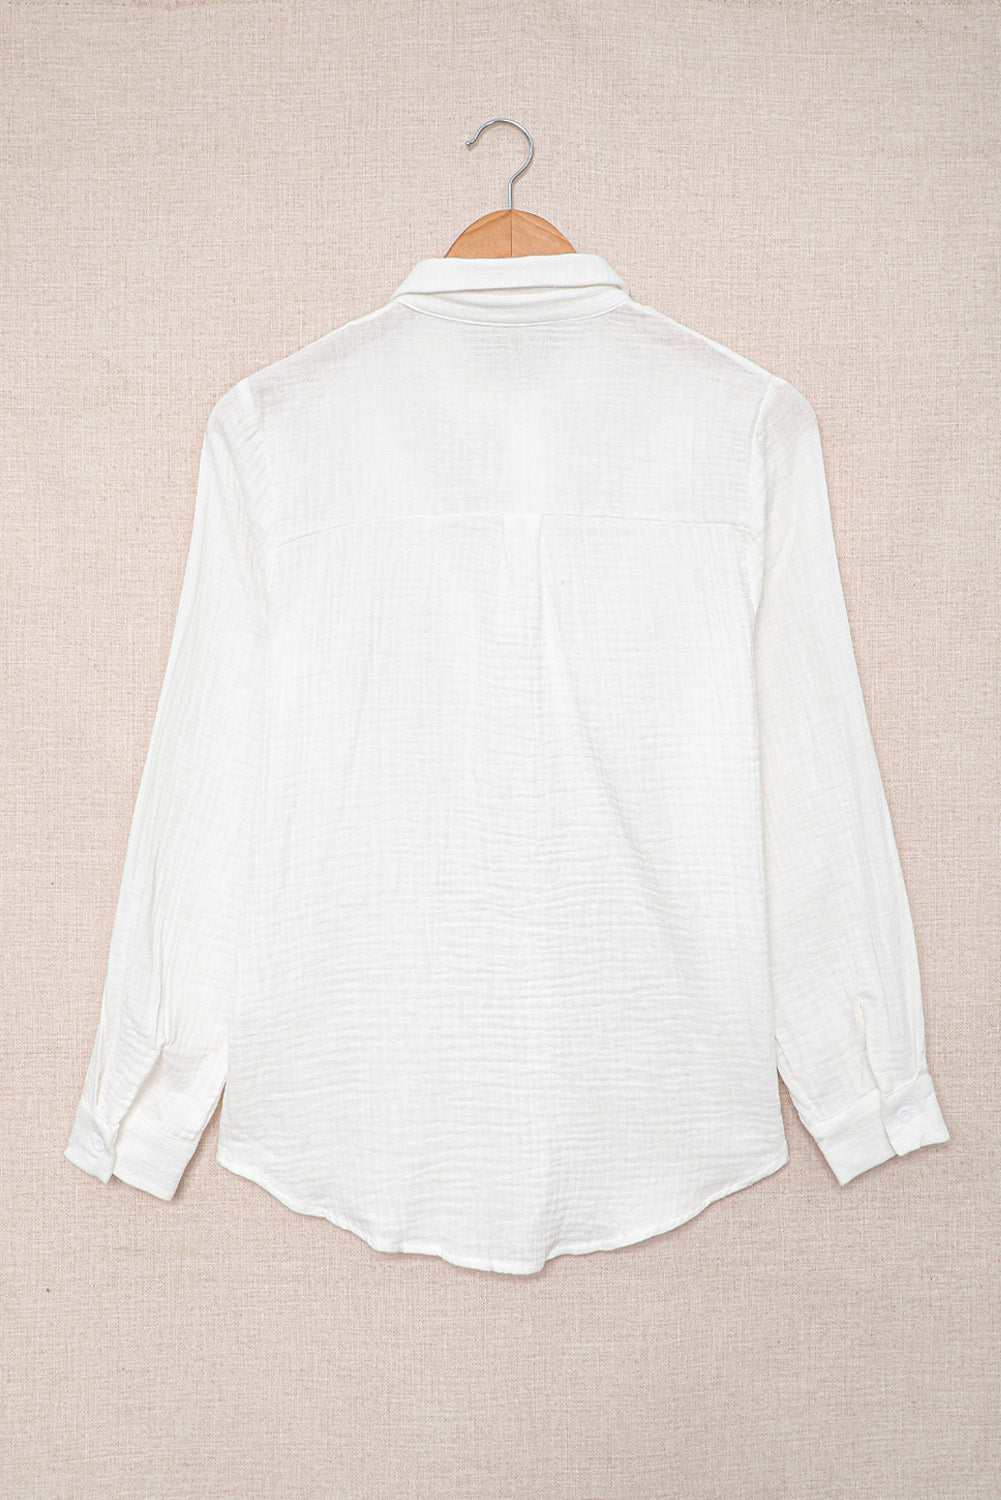 Chic White Ruffles Crinkled Long Sleeve Shirt